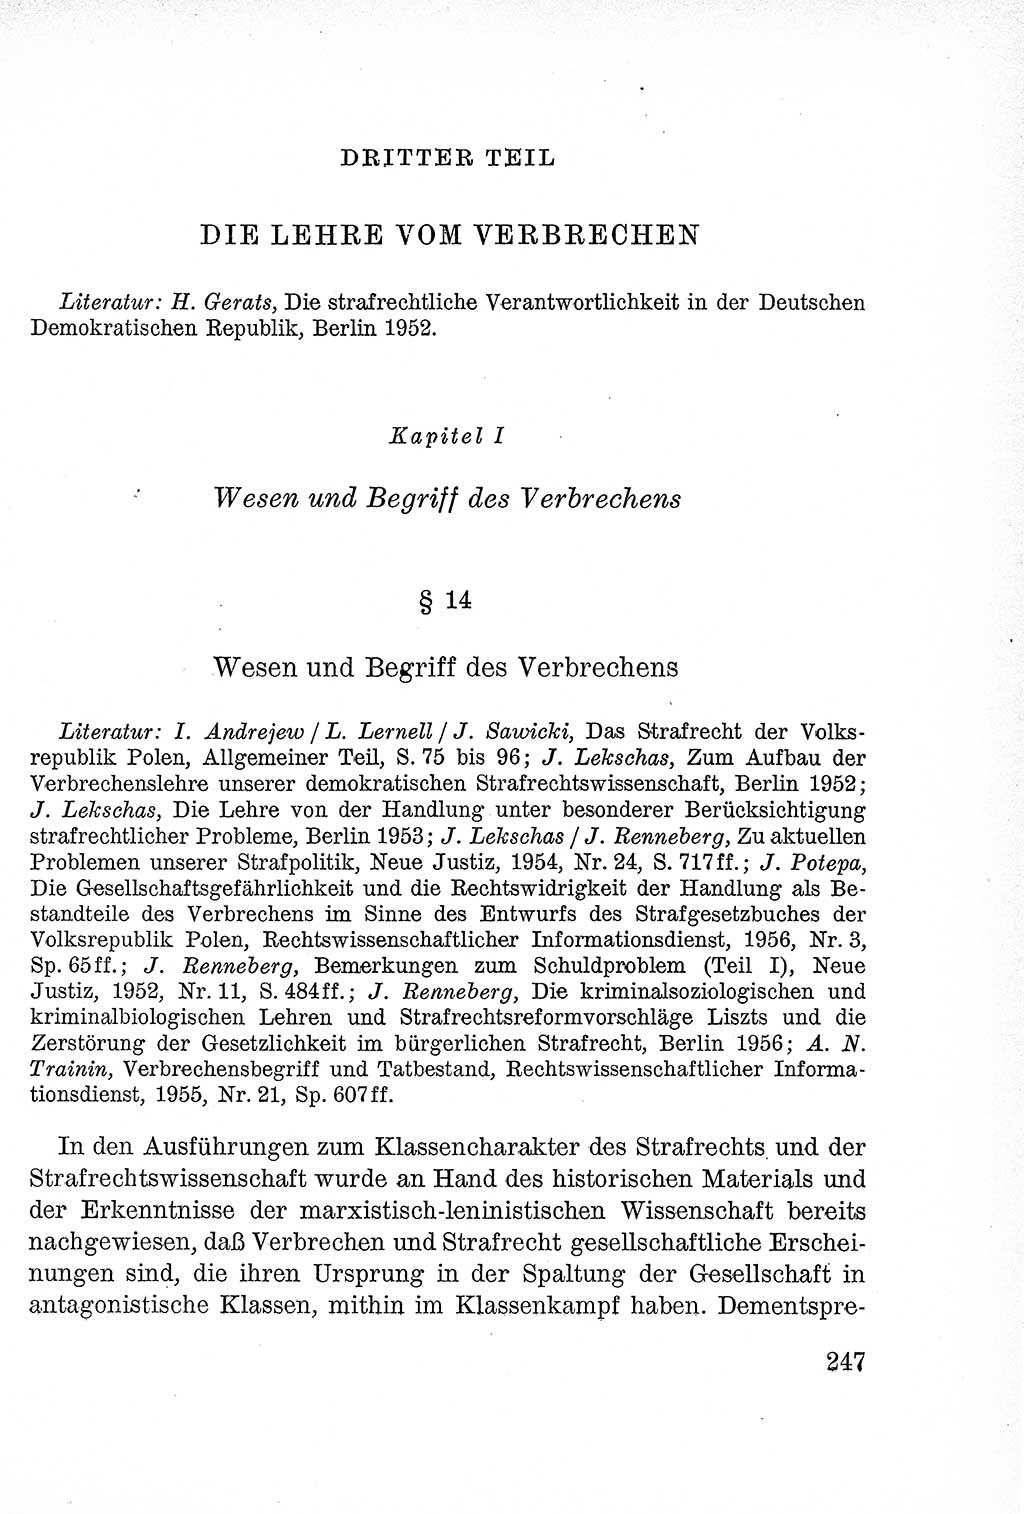 Lehrbuch des Strafrechts der Deutschen Demokratischen Republik (DDR), Allgemeiner Teil 1957, Seite 247 (Lb. Strafr. DDR AT 1957, S. 247)